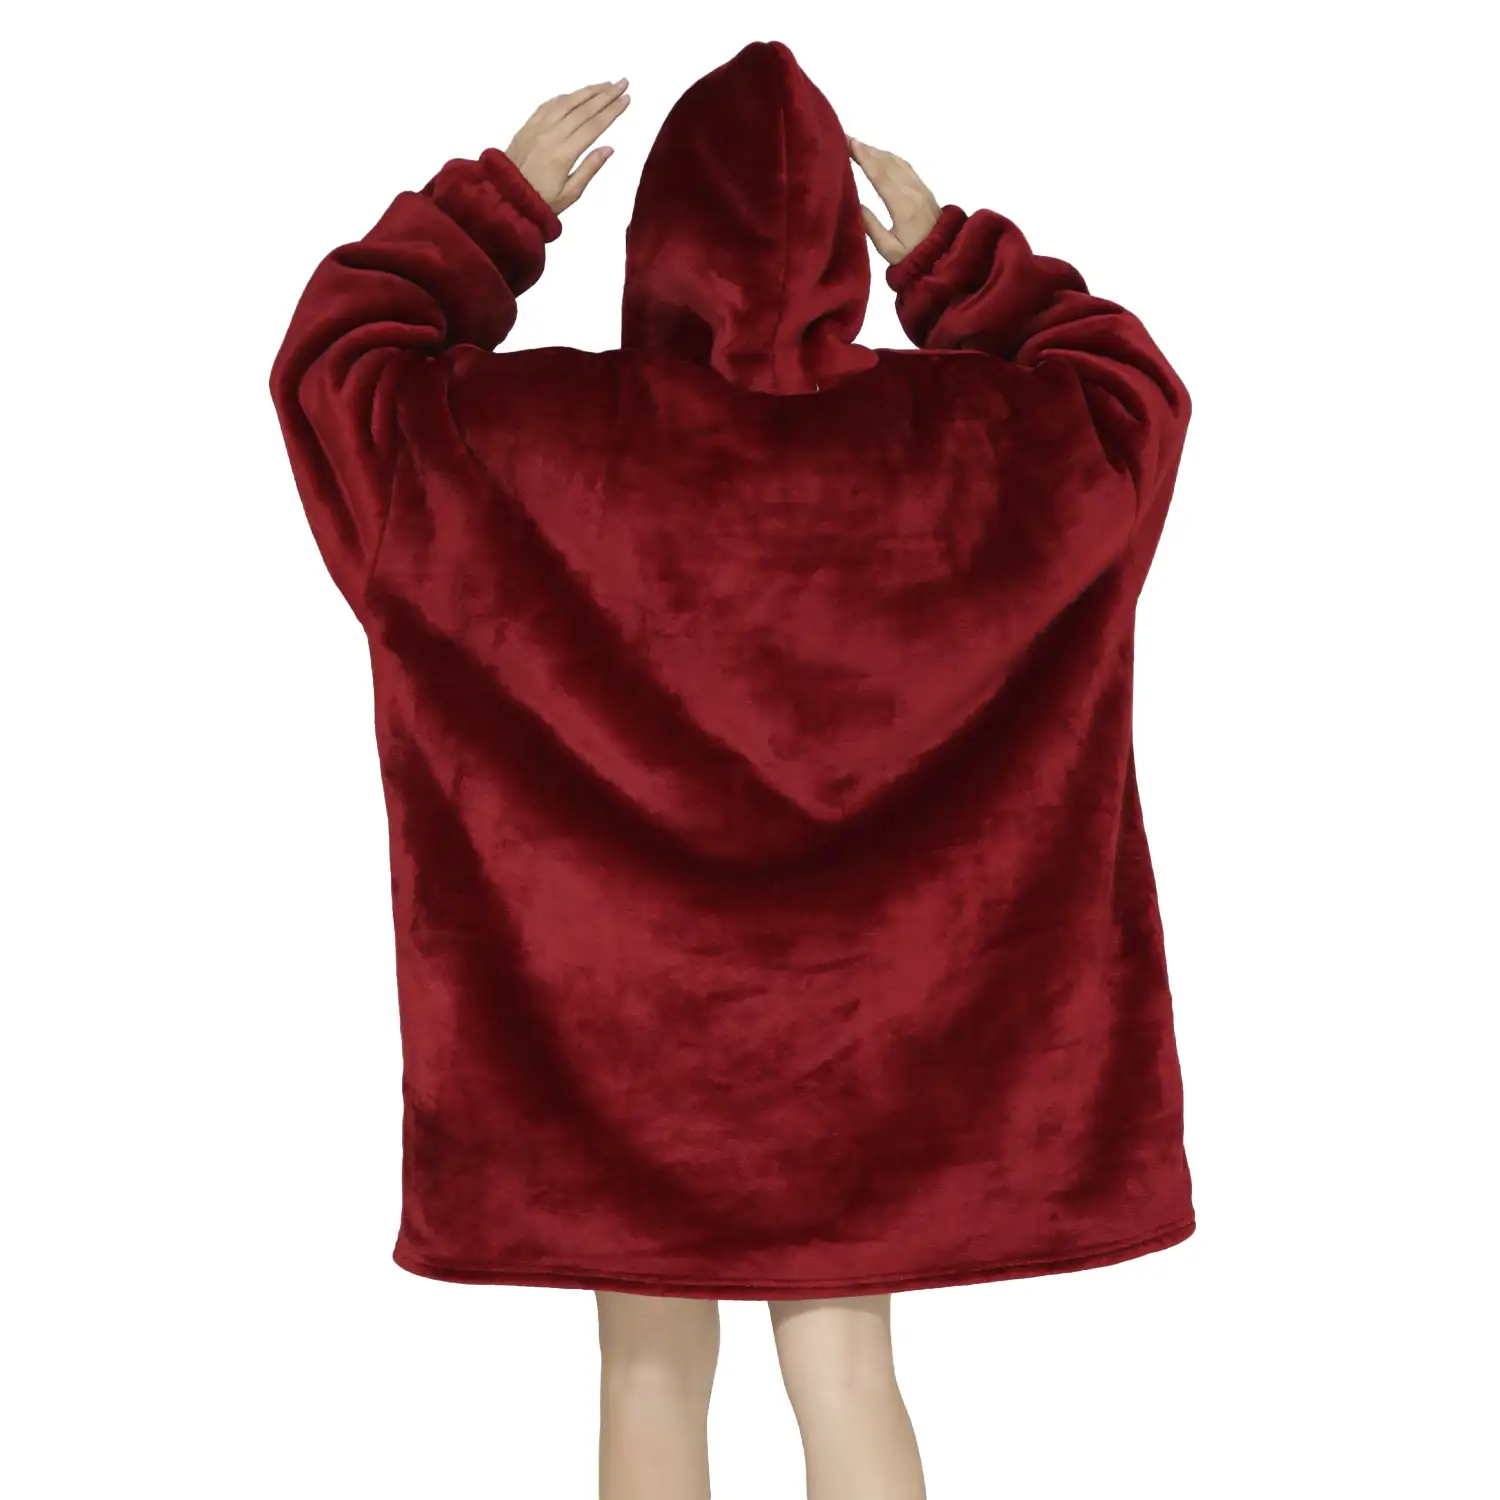 Bata estilo sudadera y manta de felpa extrasuave. Bolsillo frontal tipo canguro. Diseño Rojo